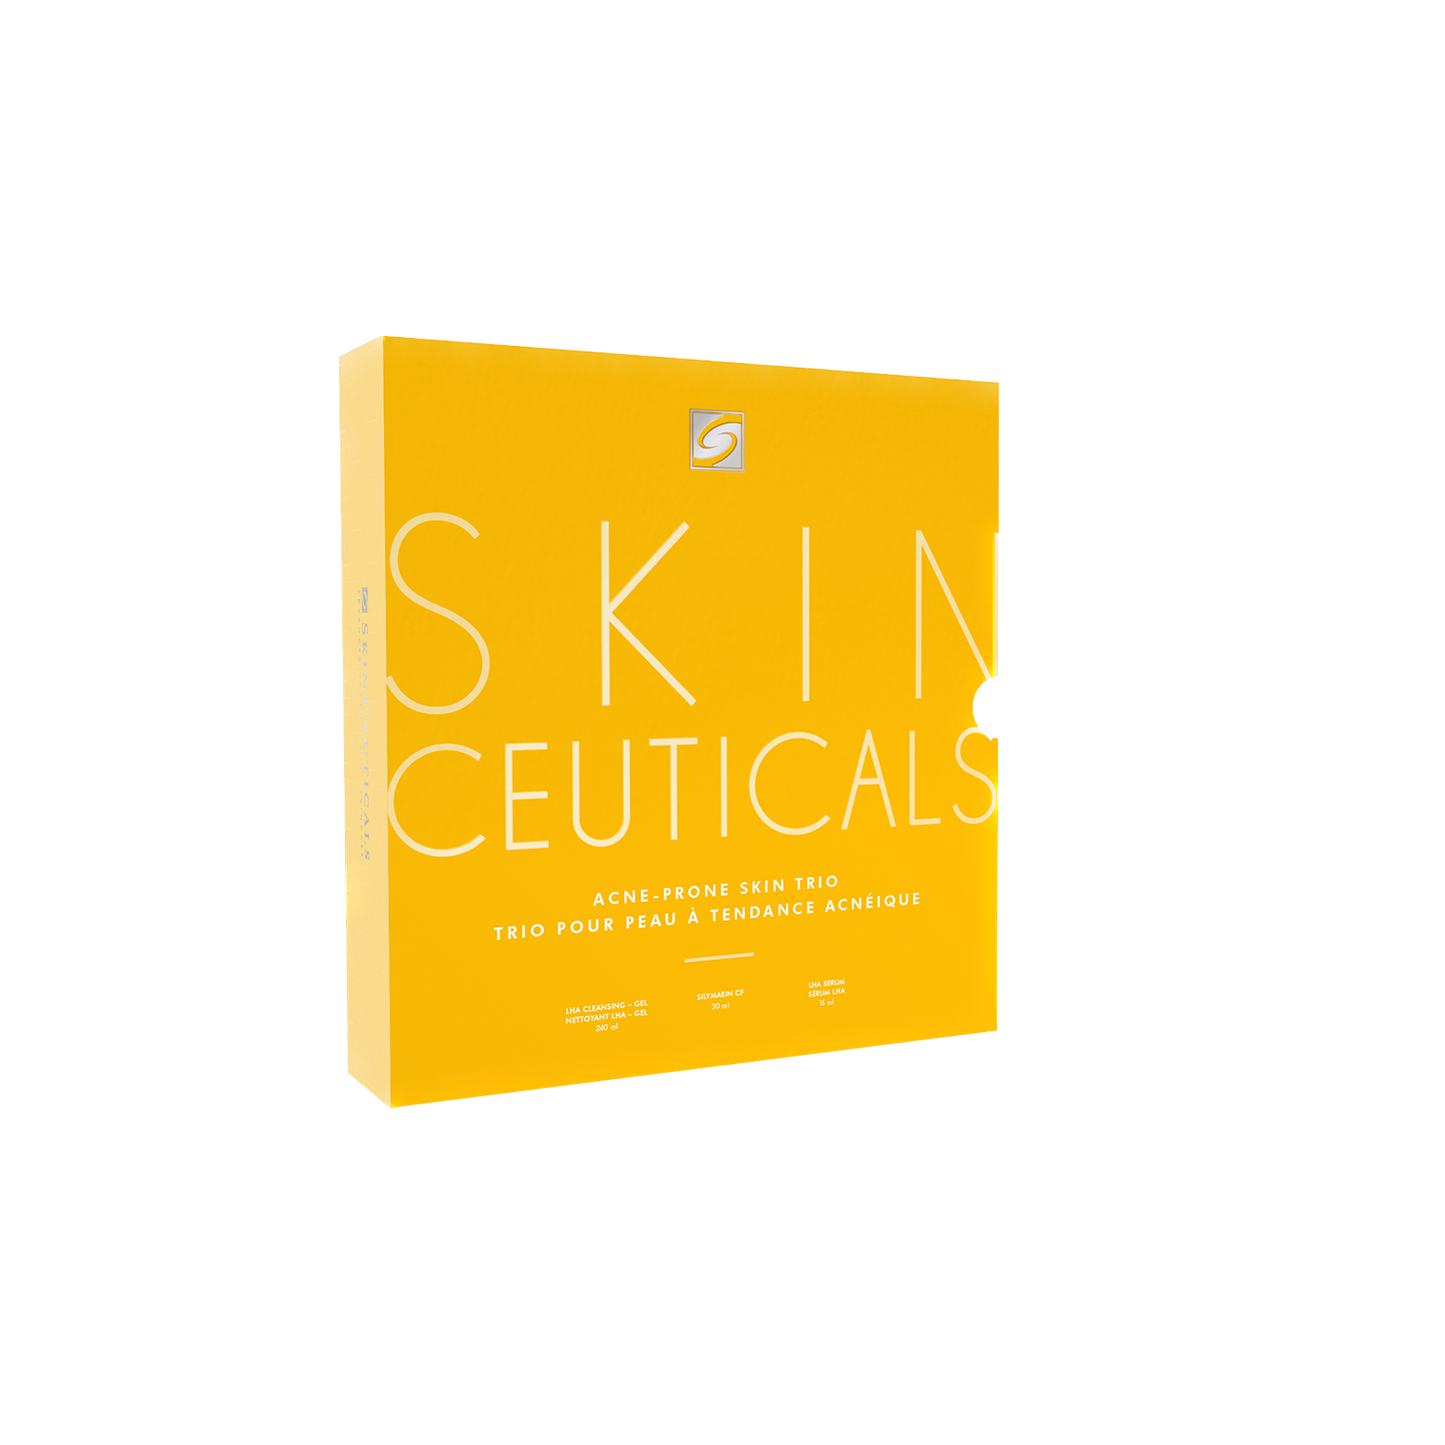 SkinCeuticals: Acne-Prone skin Trio